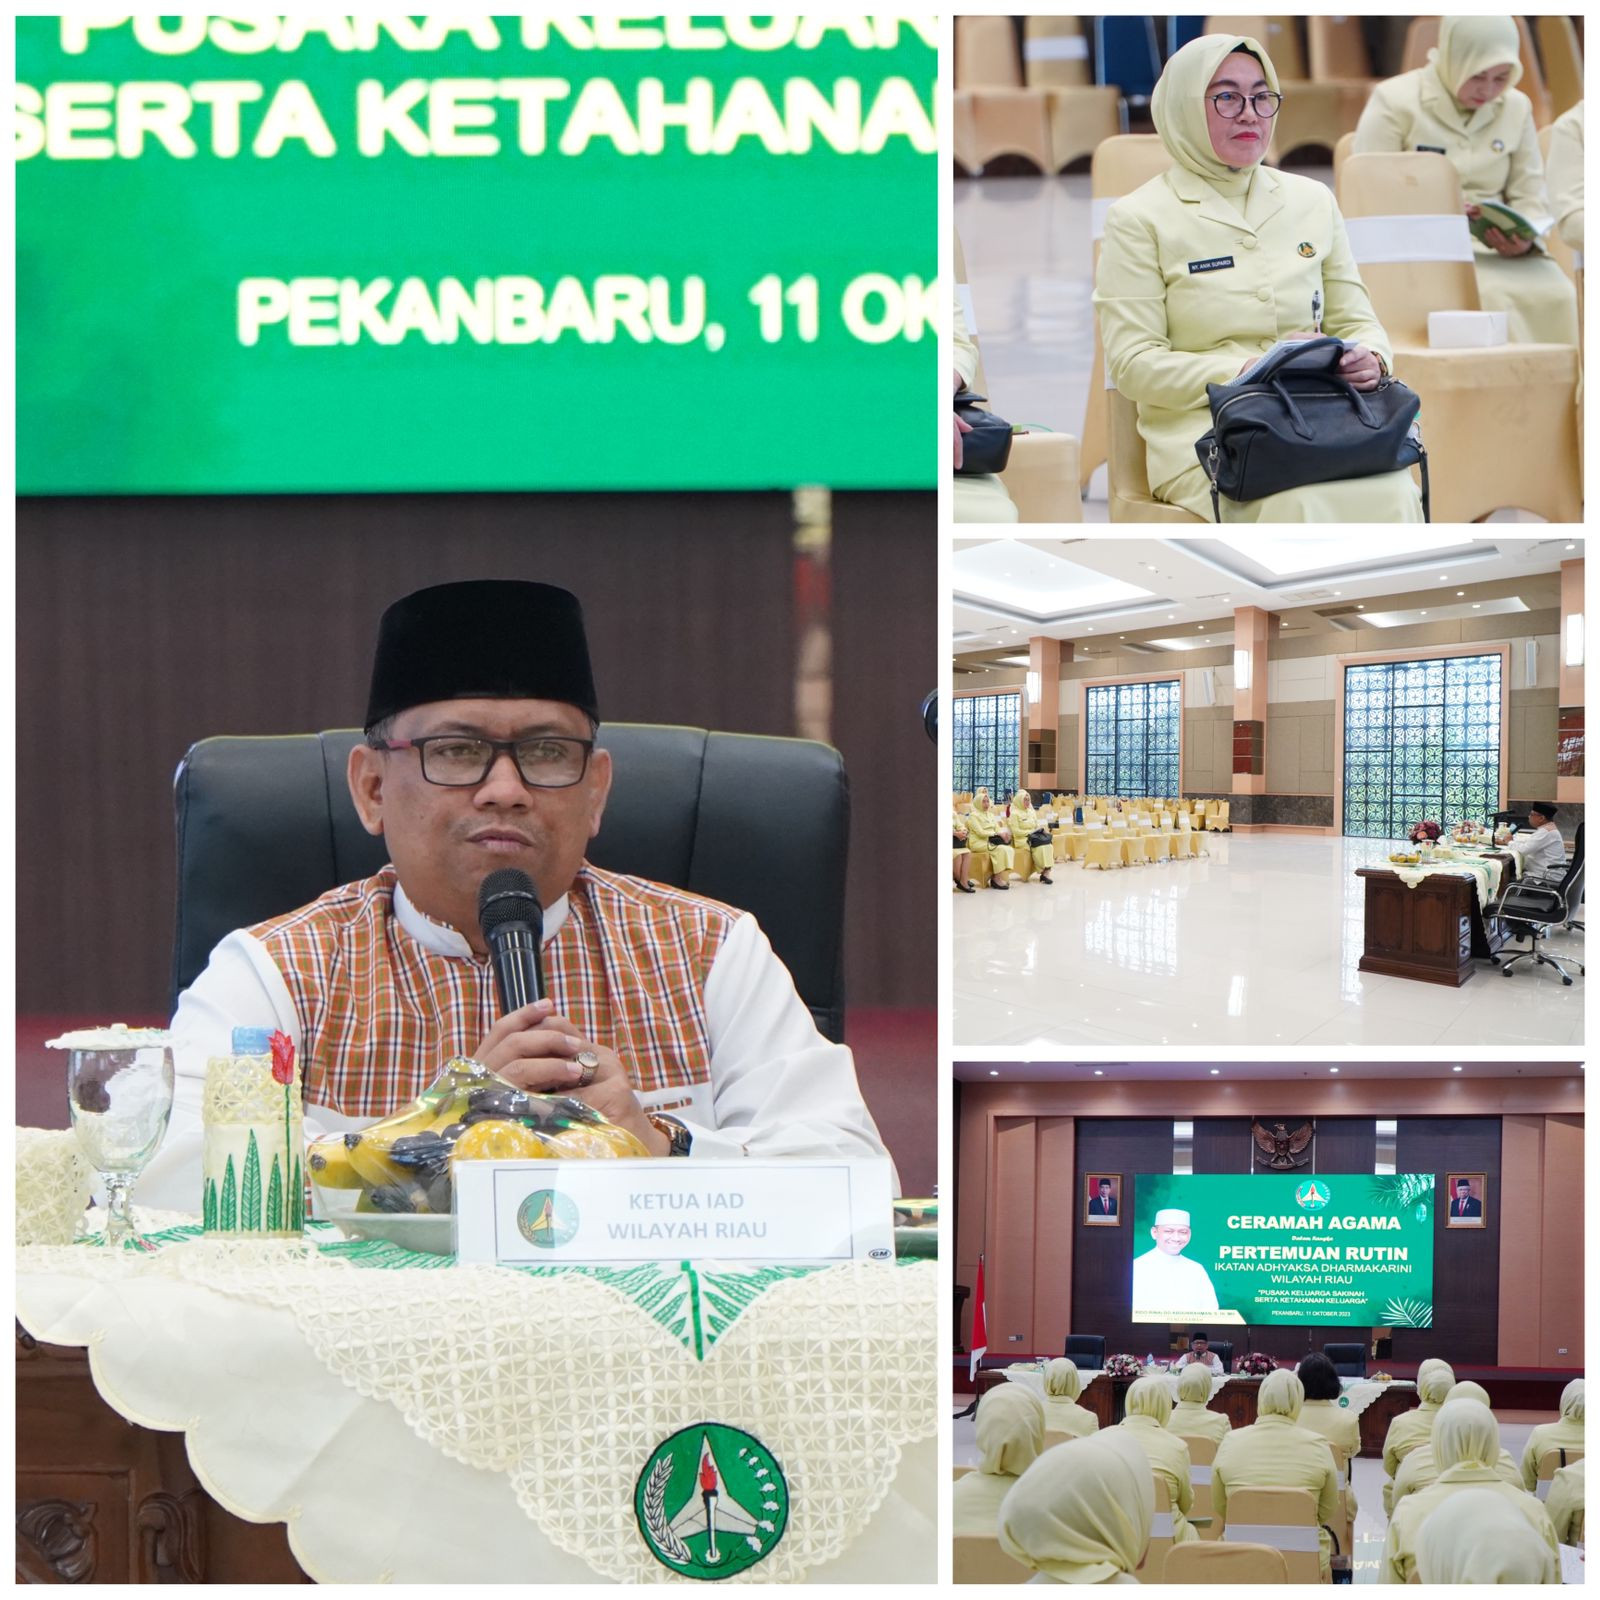 Ceramah Agama dalam rangka Pertemuan Rutin Ikatan Adhyaksa Dharmakarini Wilayah Riau